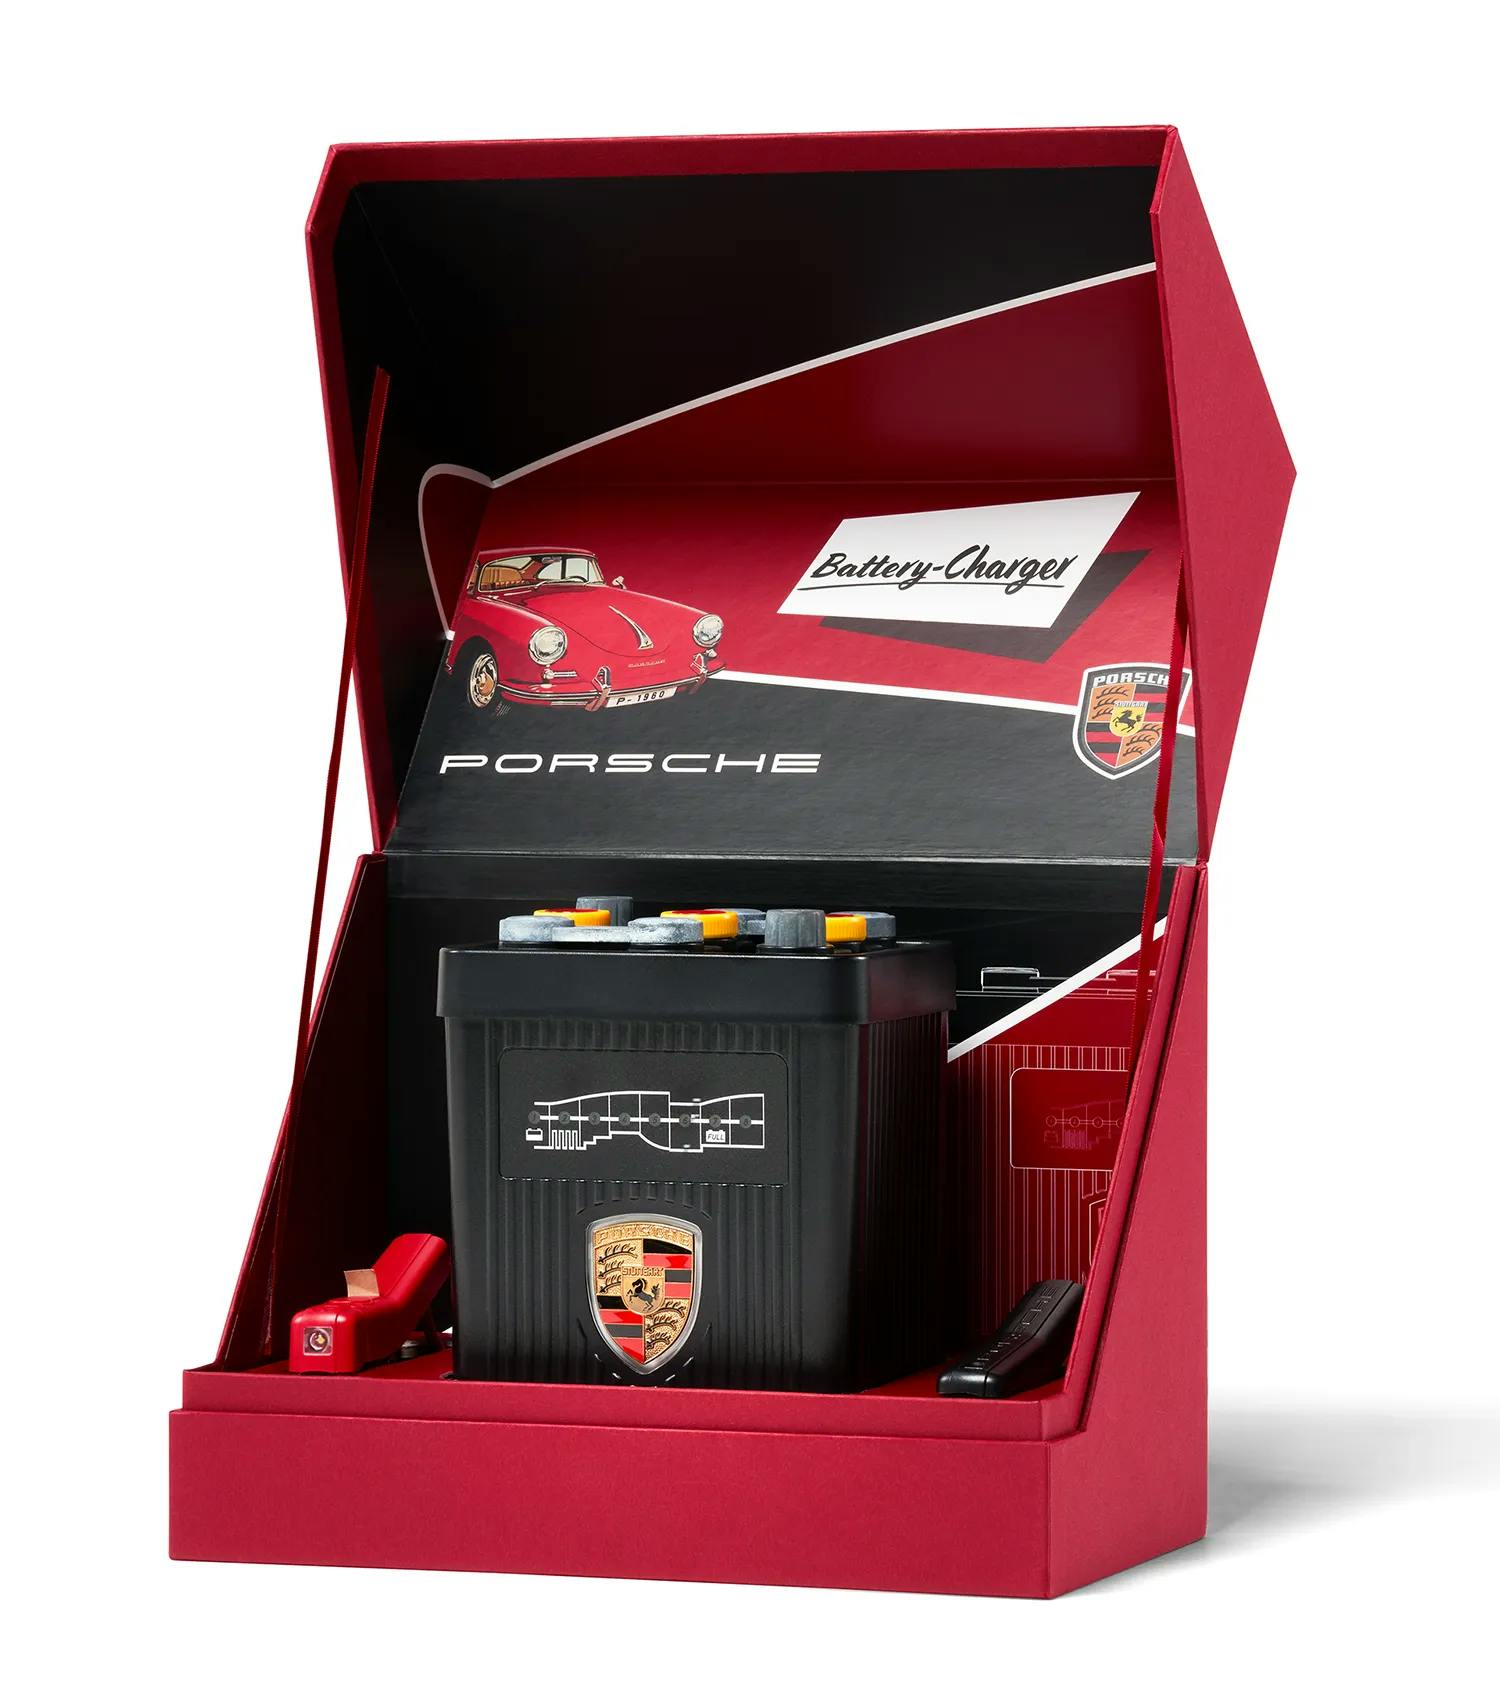 Porsche Batterieladegerät. Vollautomatisches Batterie-Erhaltungsladegerät